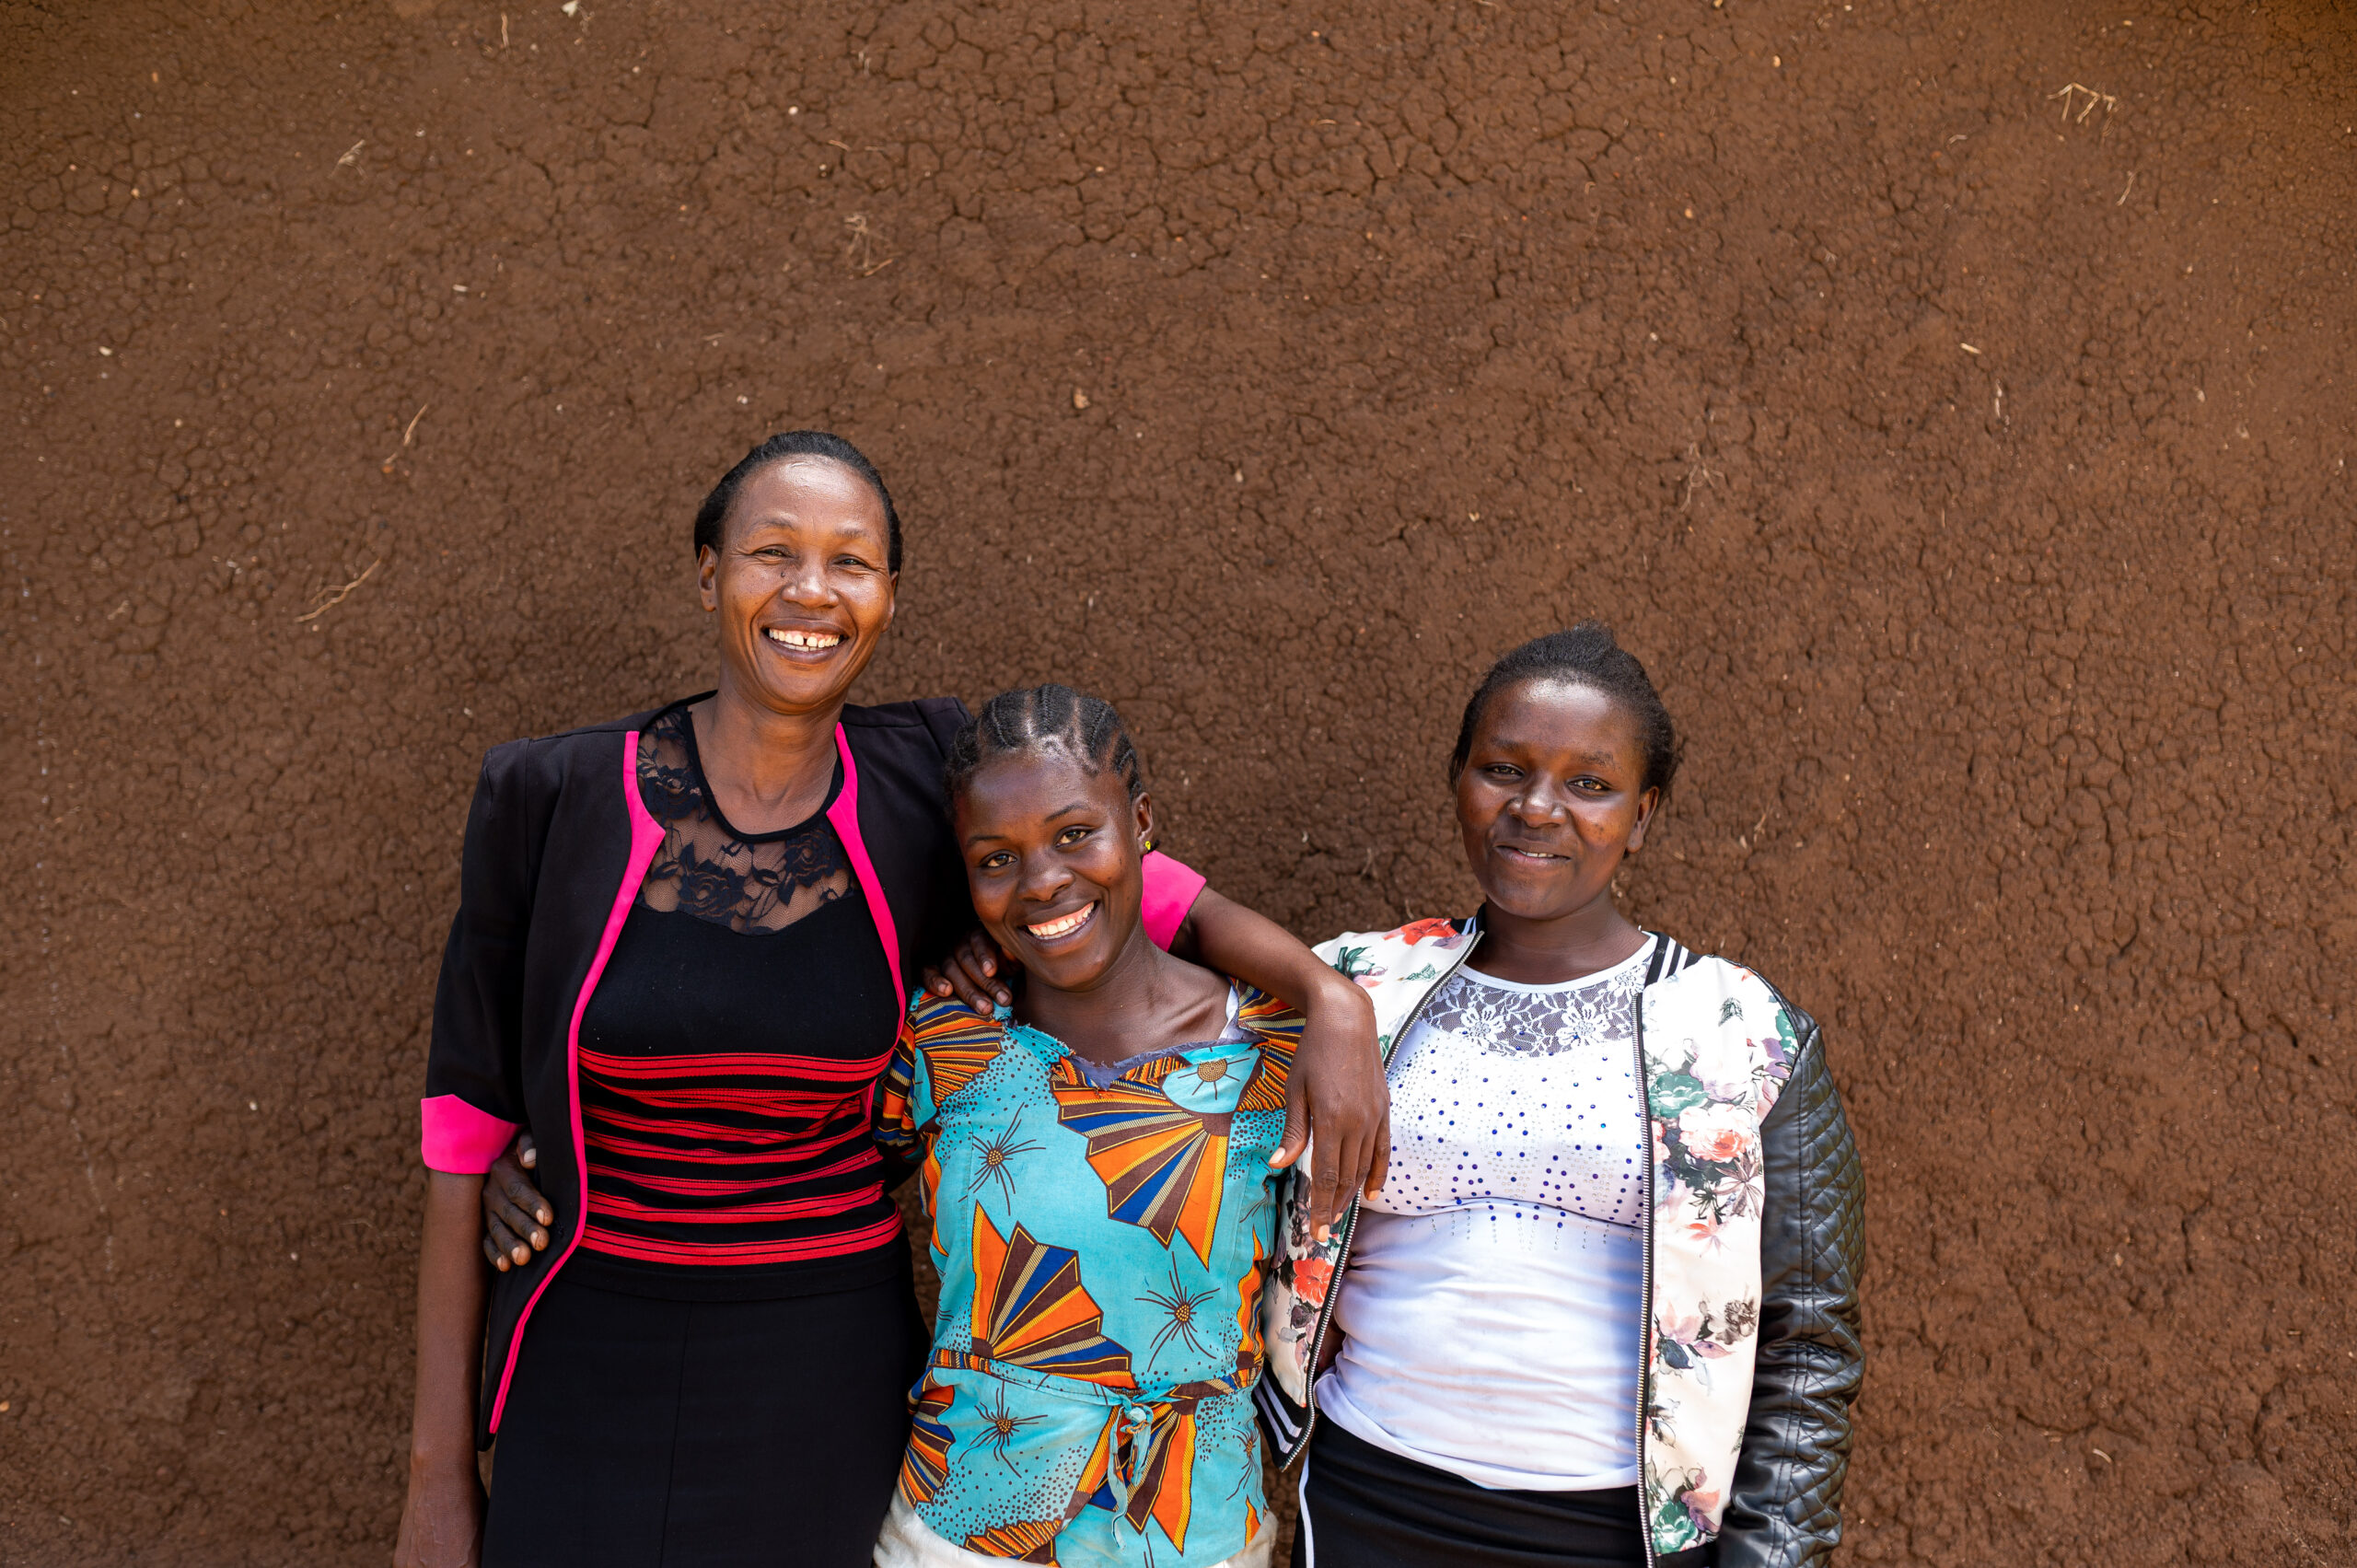 Meer dan 5.000 meisjes (10-19 jaar) in Kenia die niet naar school gingen, leerden beter lezen en rekenen, dankzij het Education for Life project.